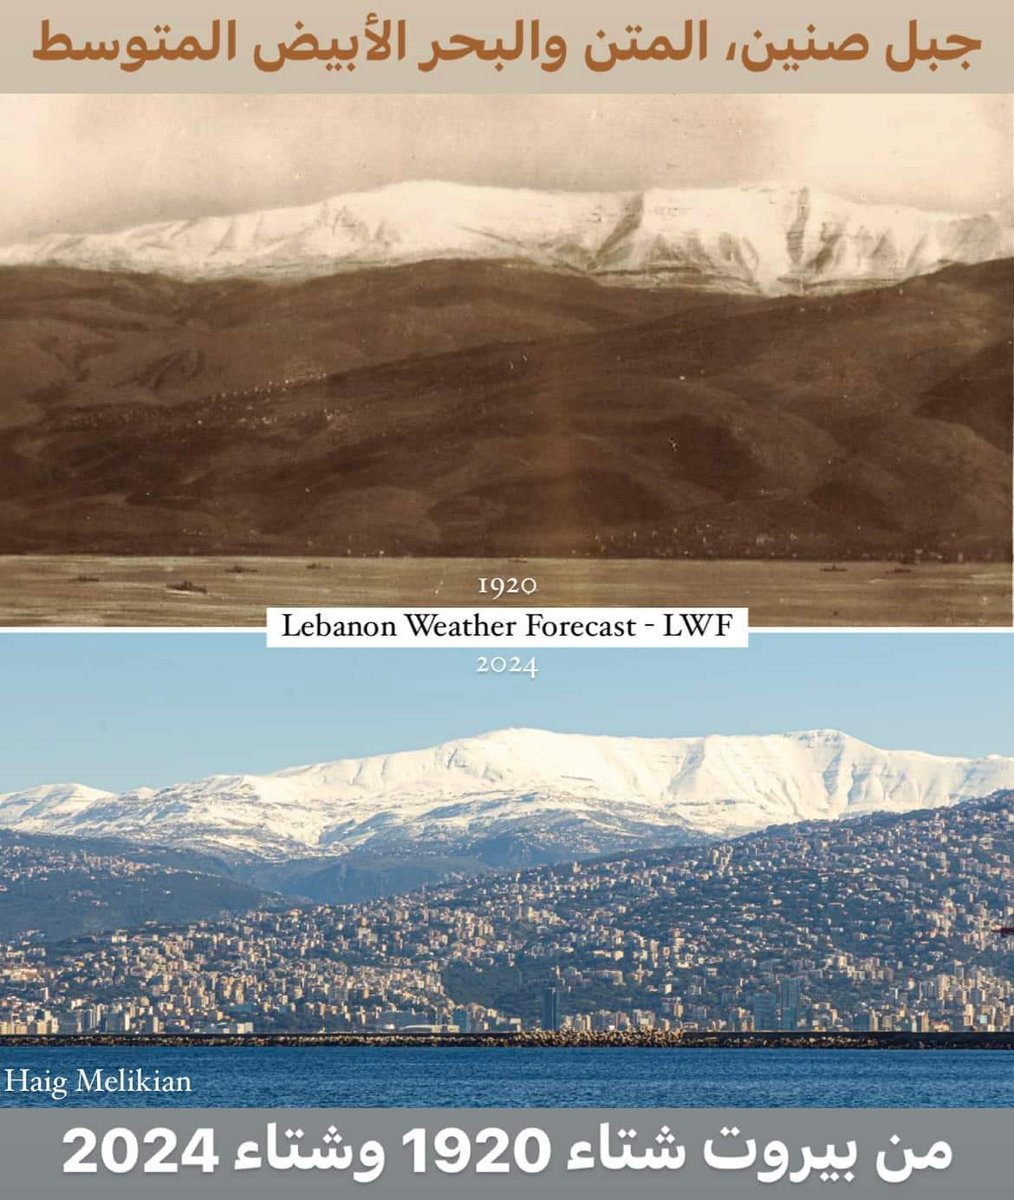 المتن وجبل صنين ما بين شتاء ١٩٢٠ و ٢٠٢٤ 📸 Haig Melikian